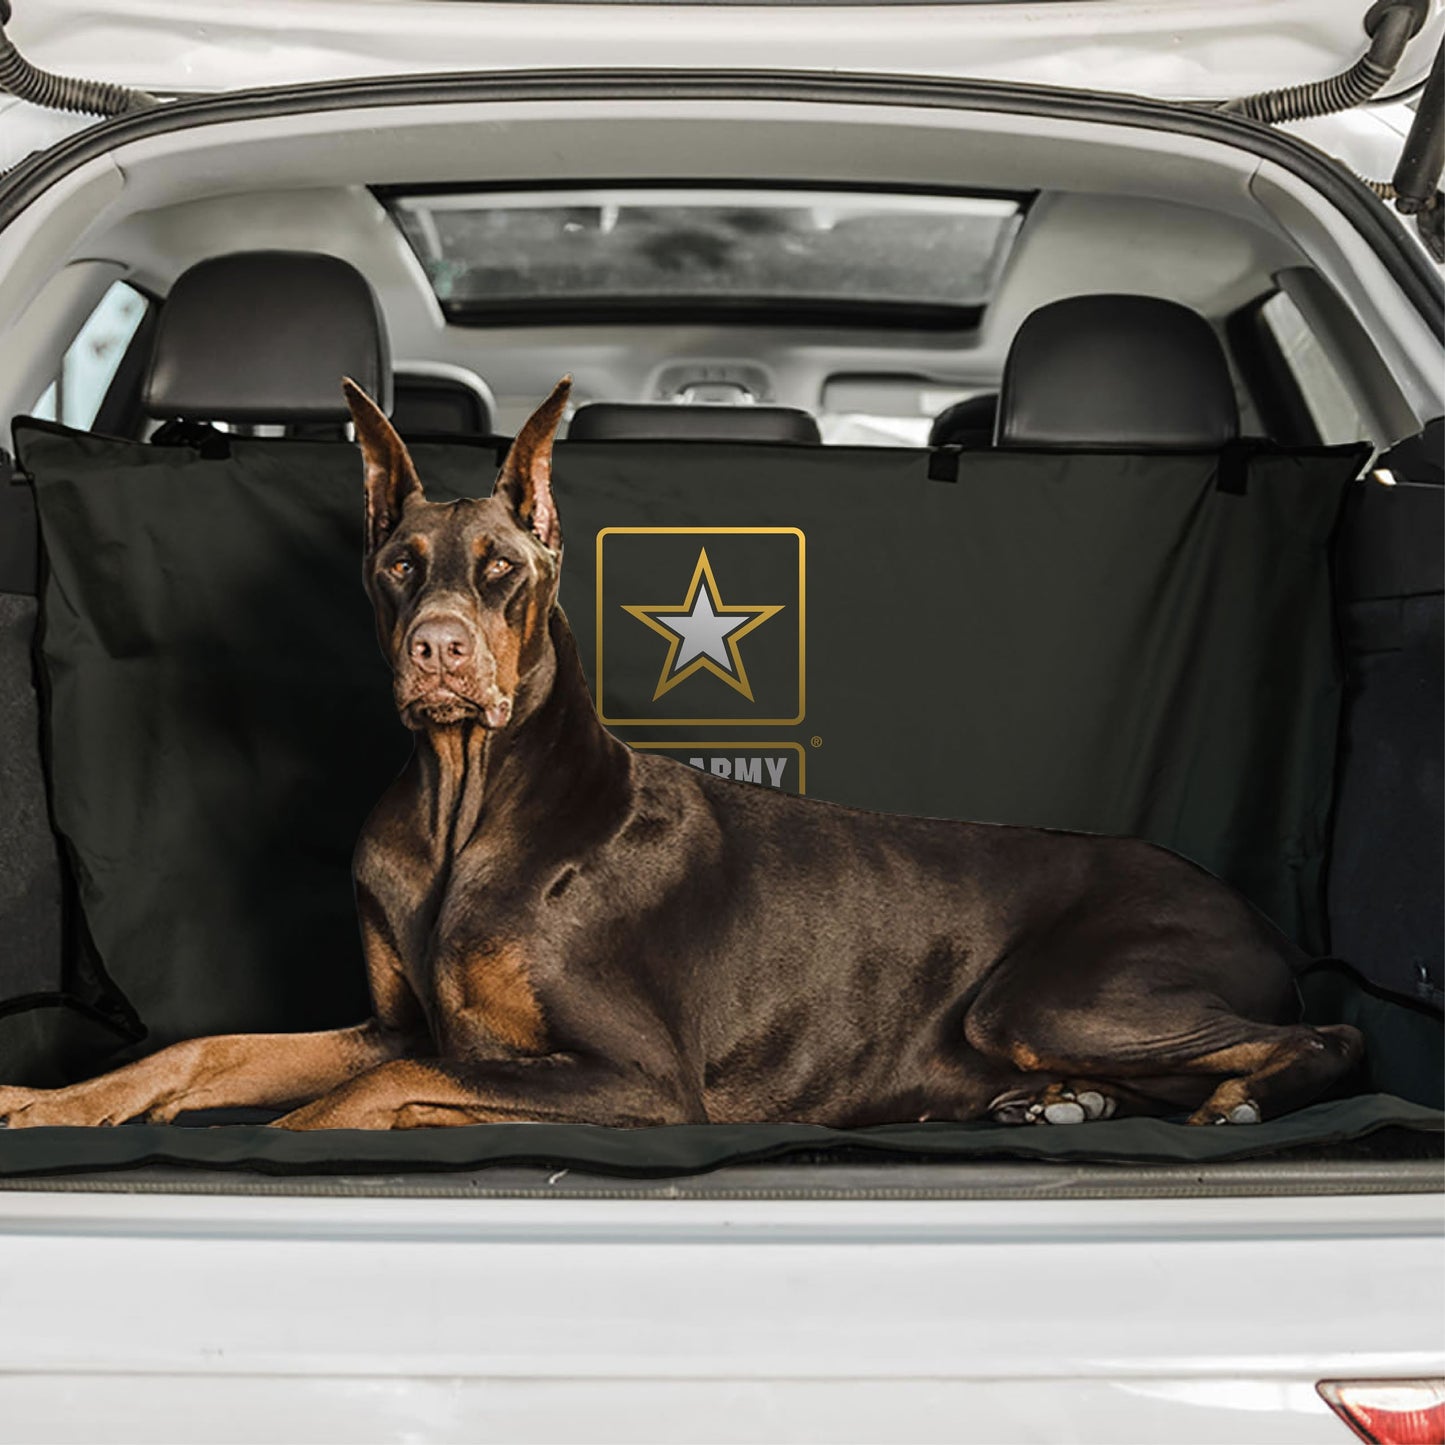 Cubierta para mascotas de carga para automóvil o SUV del ejército de EE. UU. - Camuflaje oscuro